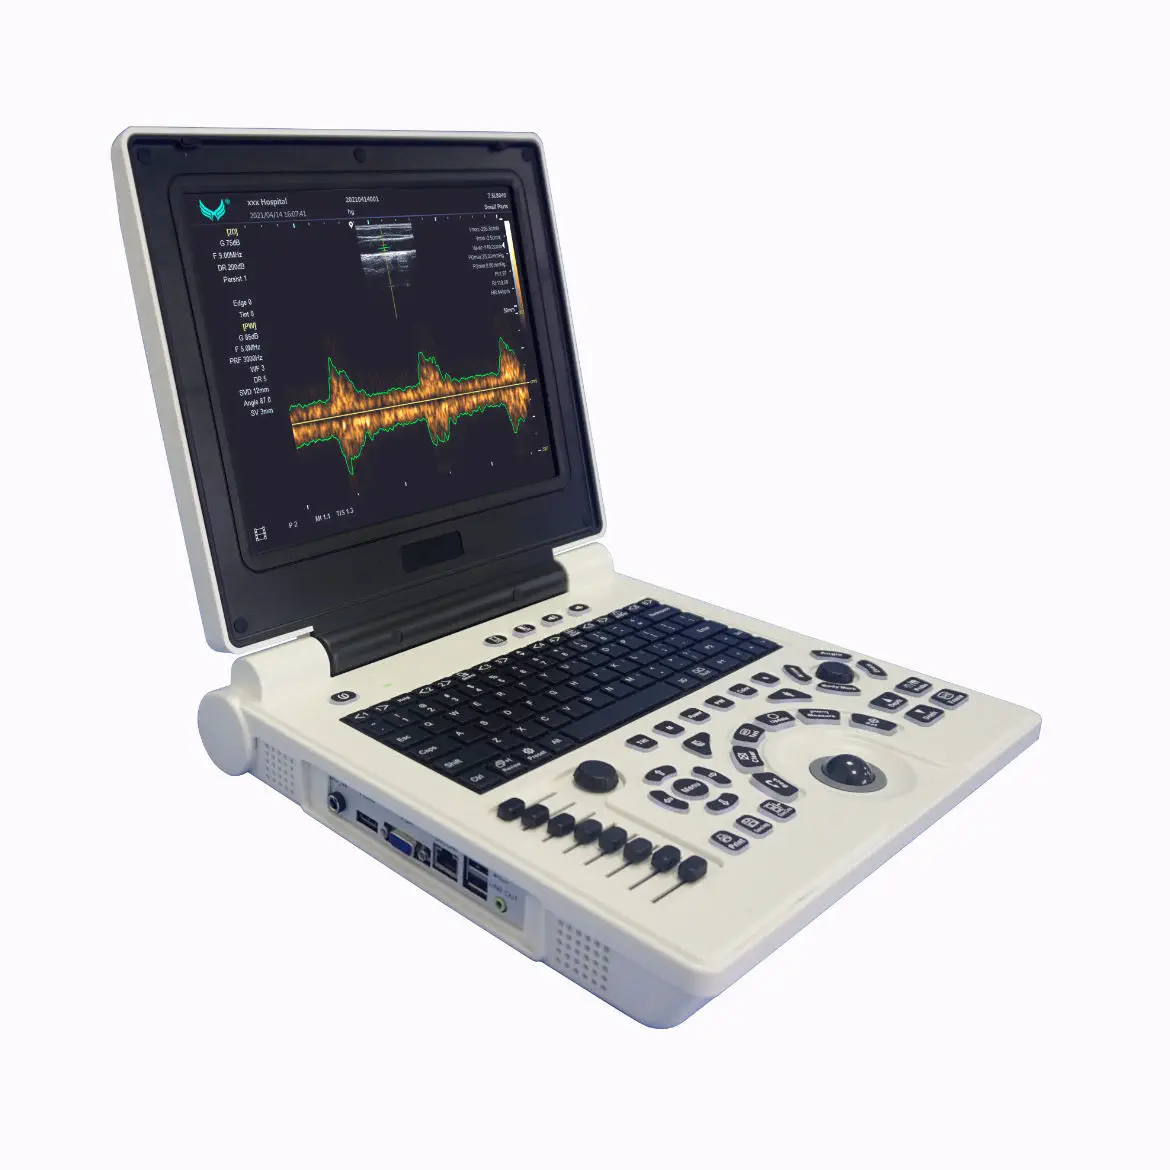 เครื่องฟังเสียงหลอดเลือดด้วยคลื่นเสียงความถี่สูงชนิดพกพา  Portable ultrasound system E20  Xianfeng Ultrasound Medical